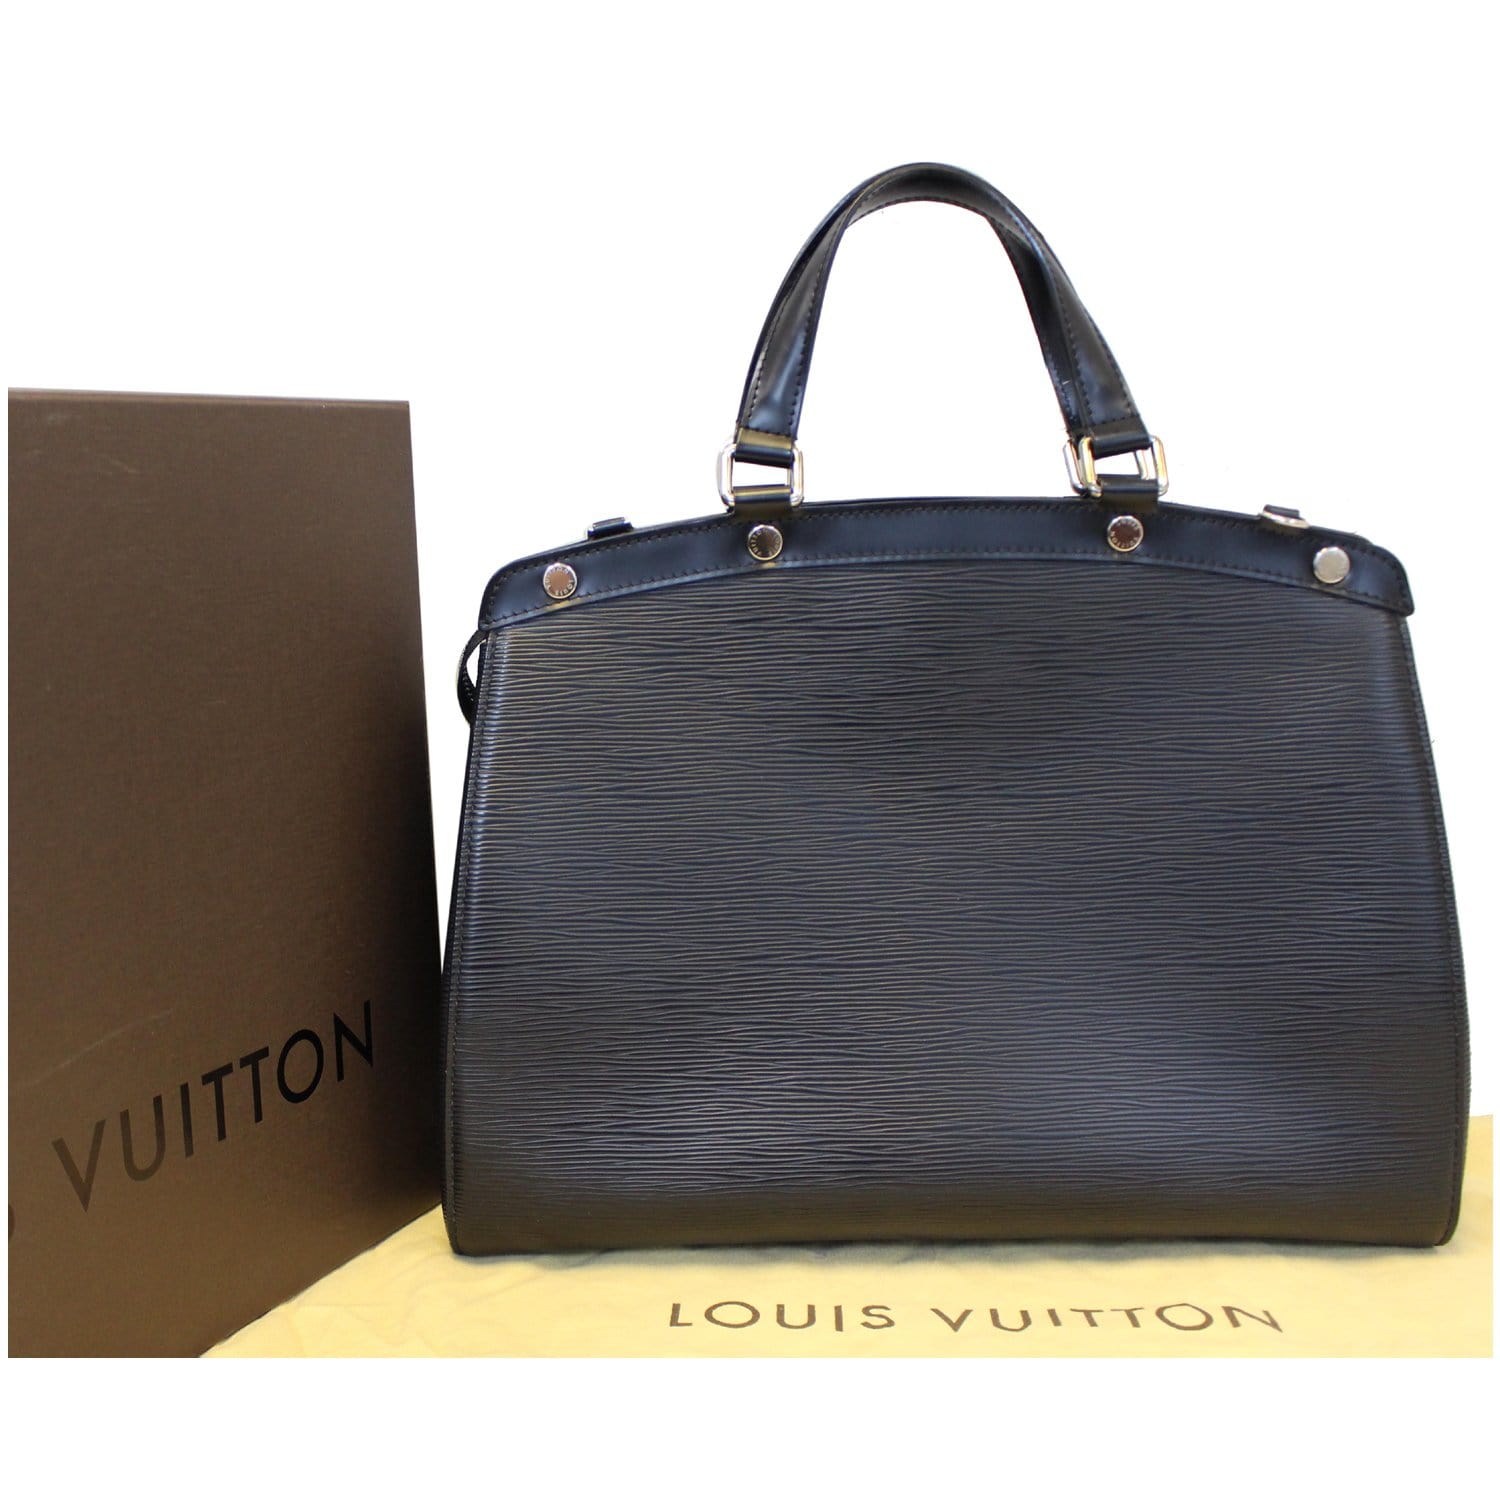 Louis Vuitton Brea Patent Leather Handbag